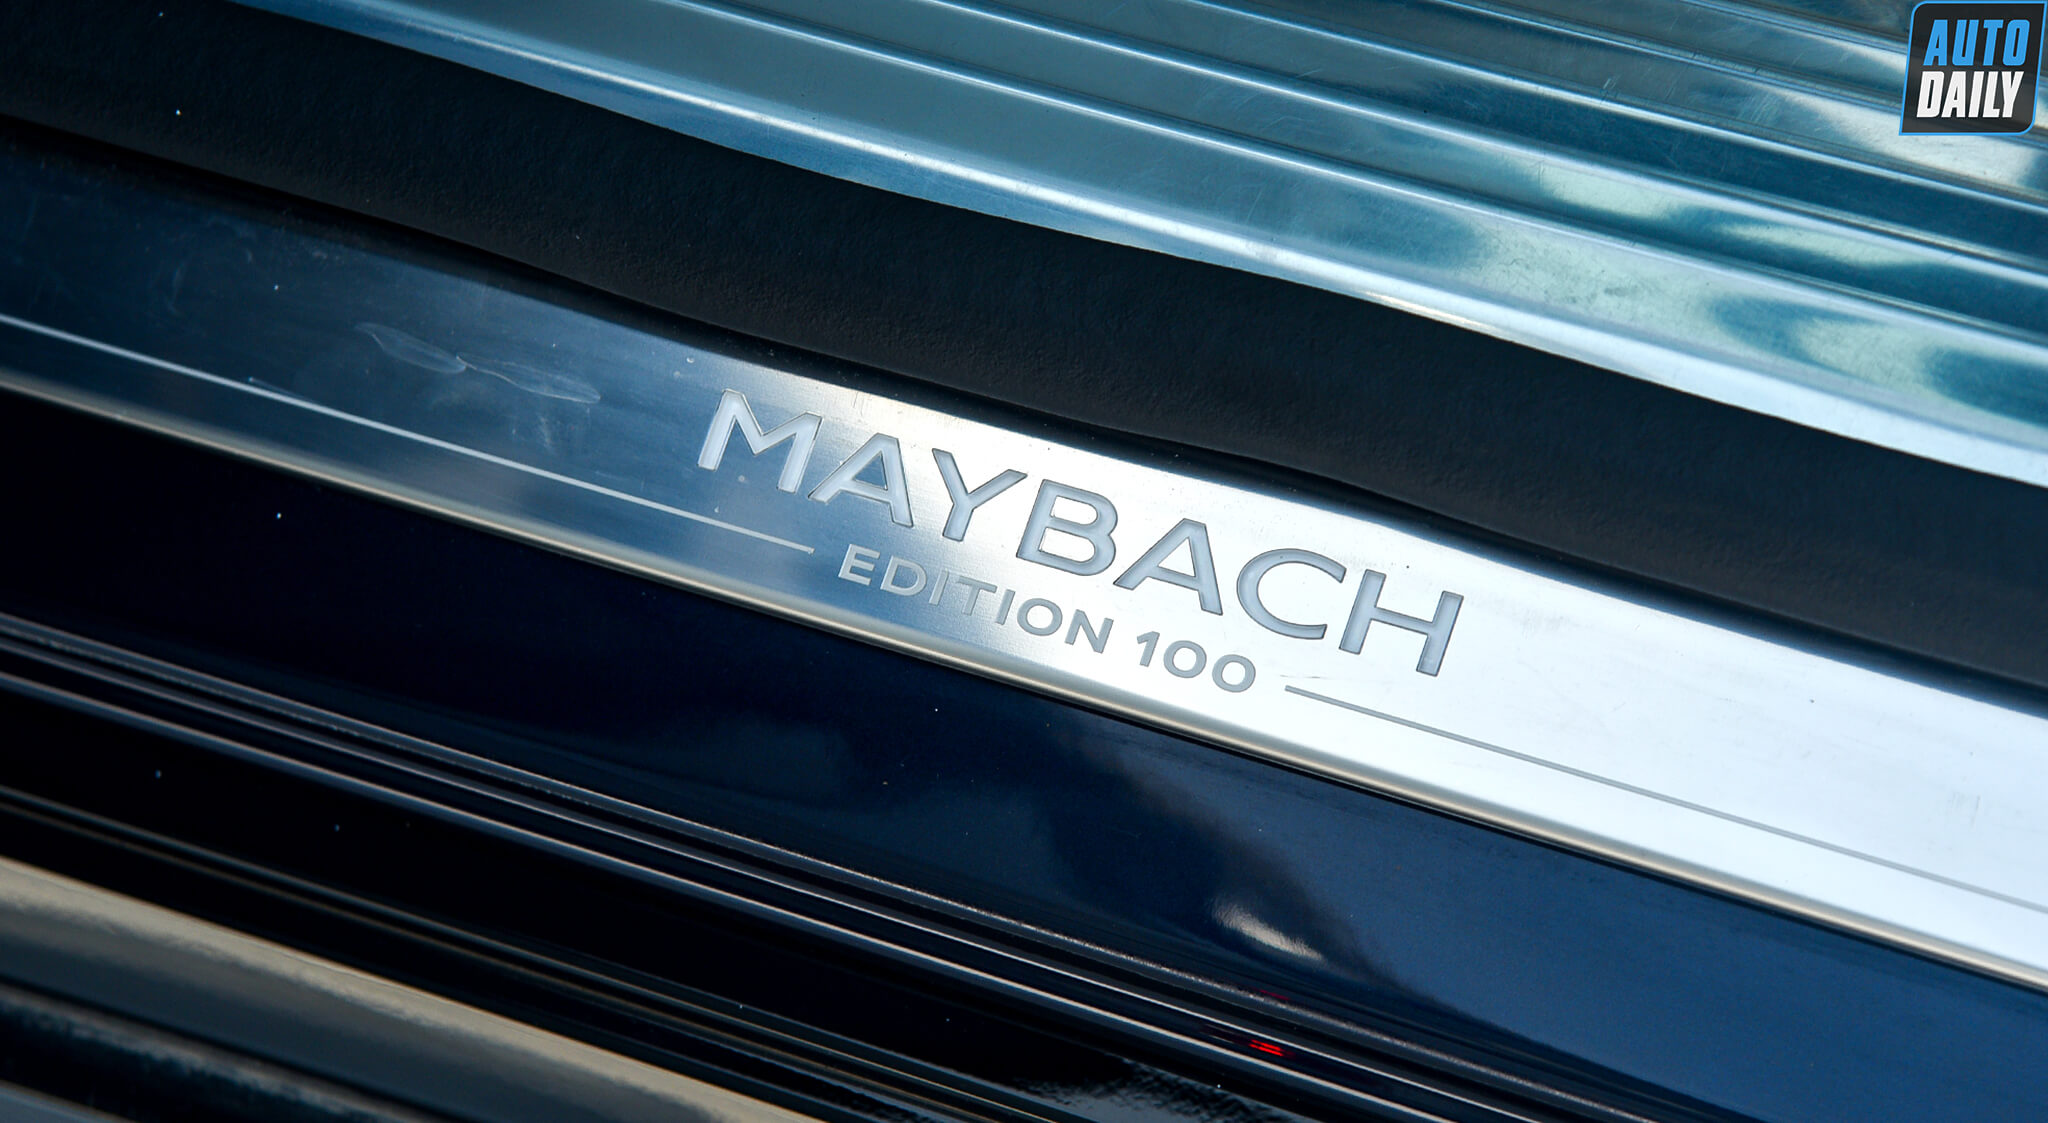 Mercedes-Maybach-GLS-600-Edition-100